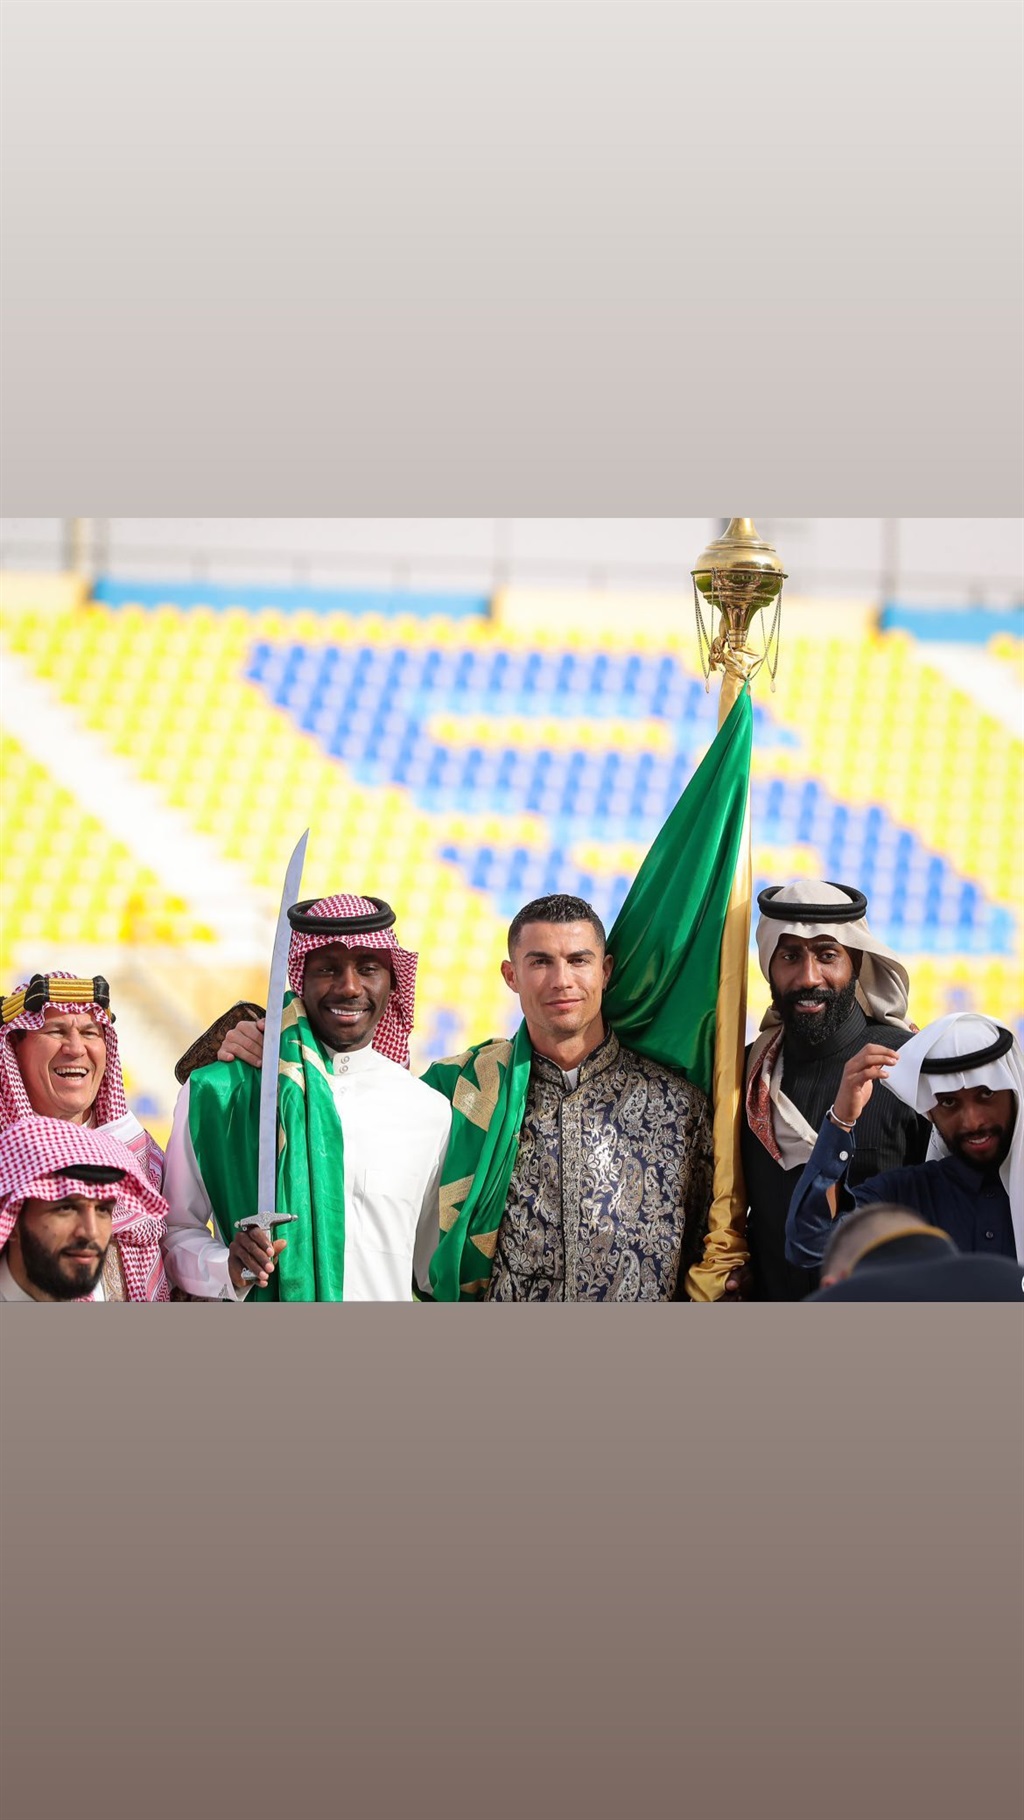 Cristiano Ronaldo of Al Nassr participating in a special Saudi Arabia experience